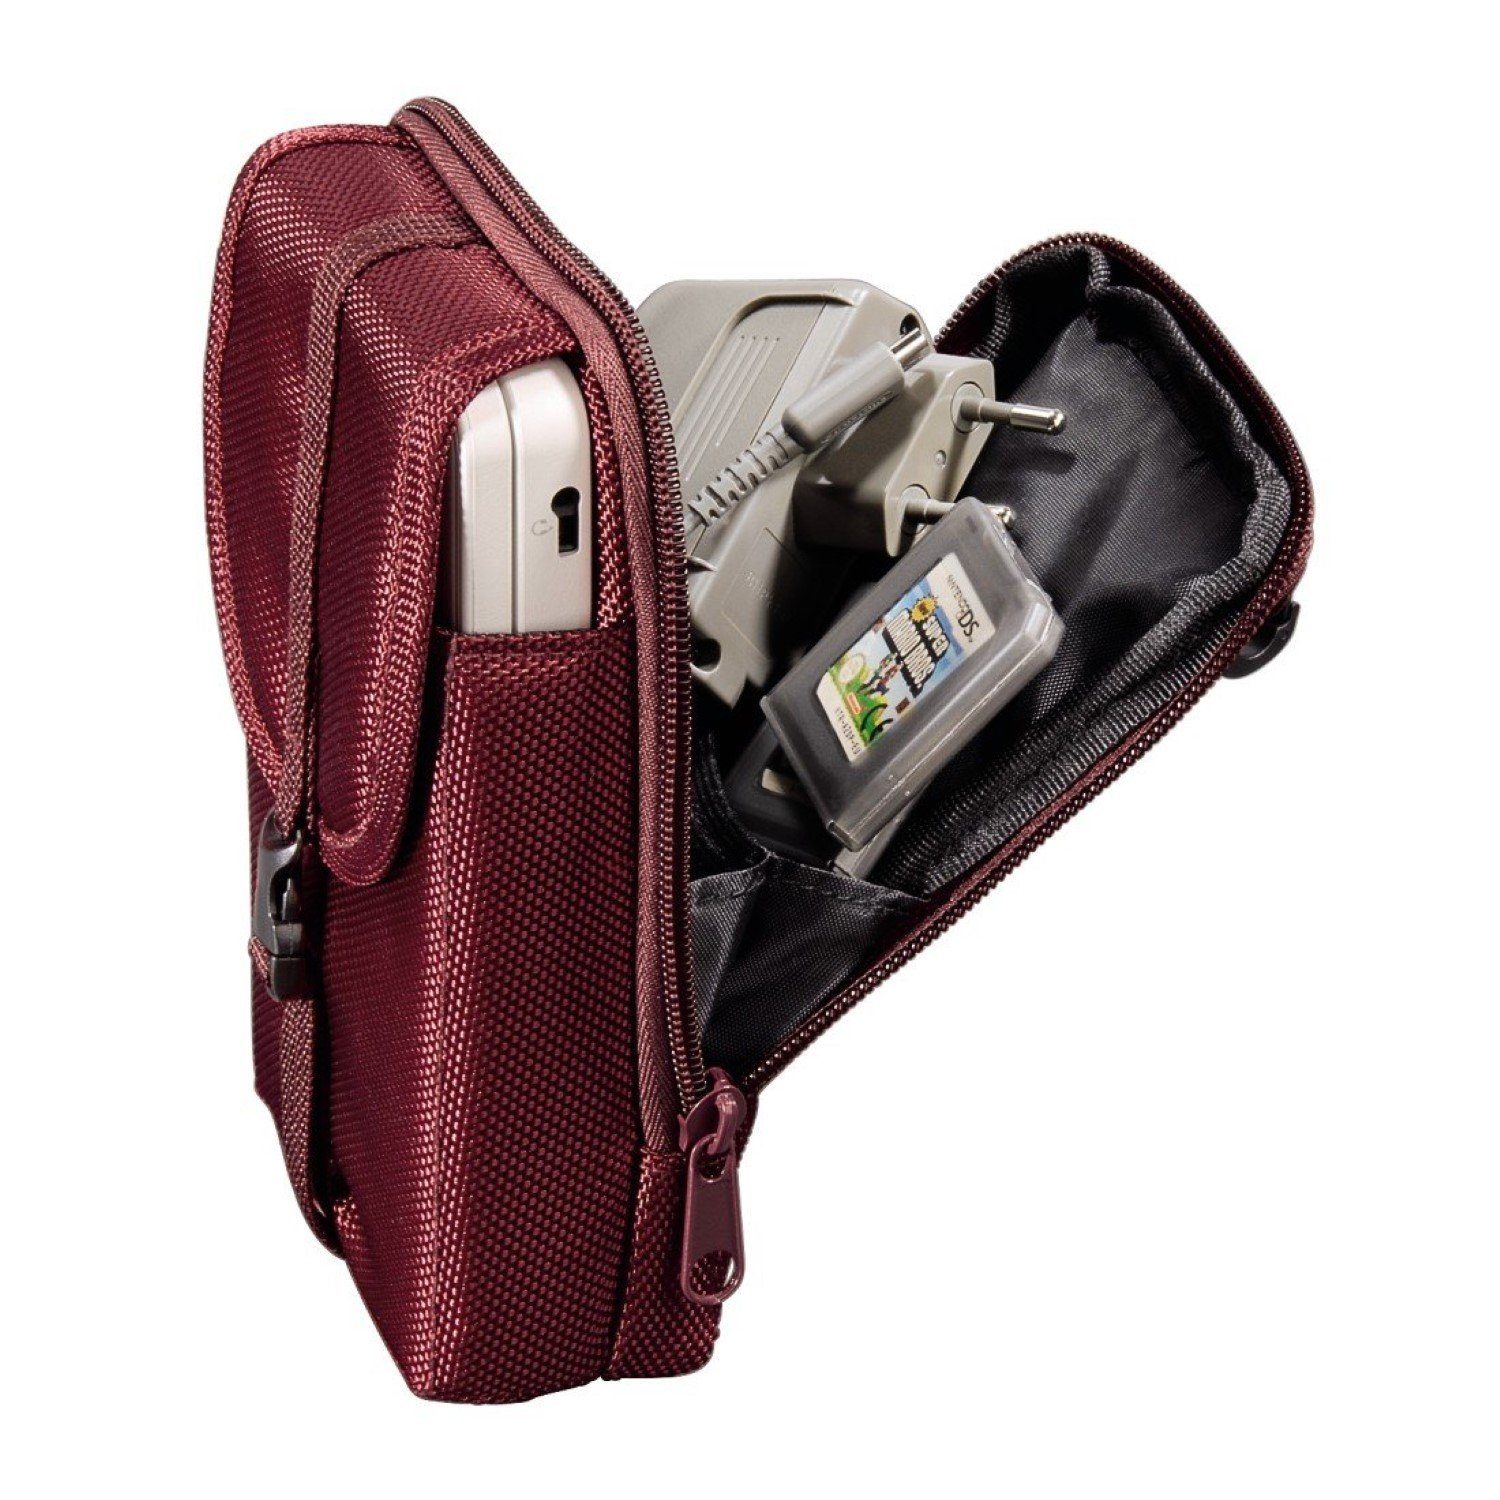 Hama Konsolen-Tasche Travel Tasche Schutz-Hülle Case Etui Rot, Soft-Case  mit Zubehör-Fachpassend für Nintendo New 2DS XL, New 3DS XL, 3DS XL, DSi XL,  etc. Konsole